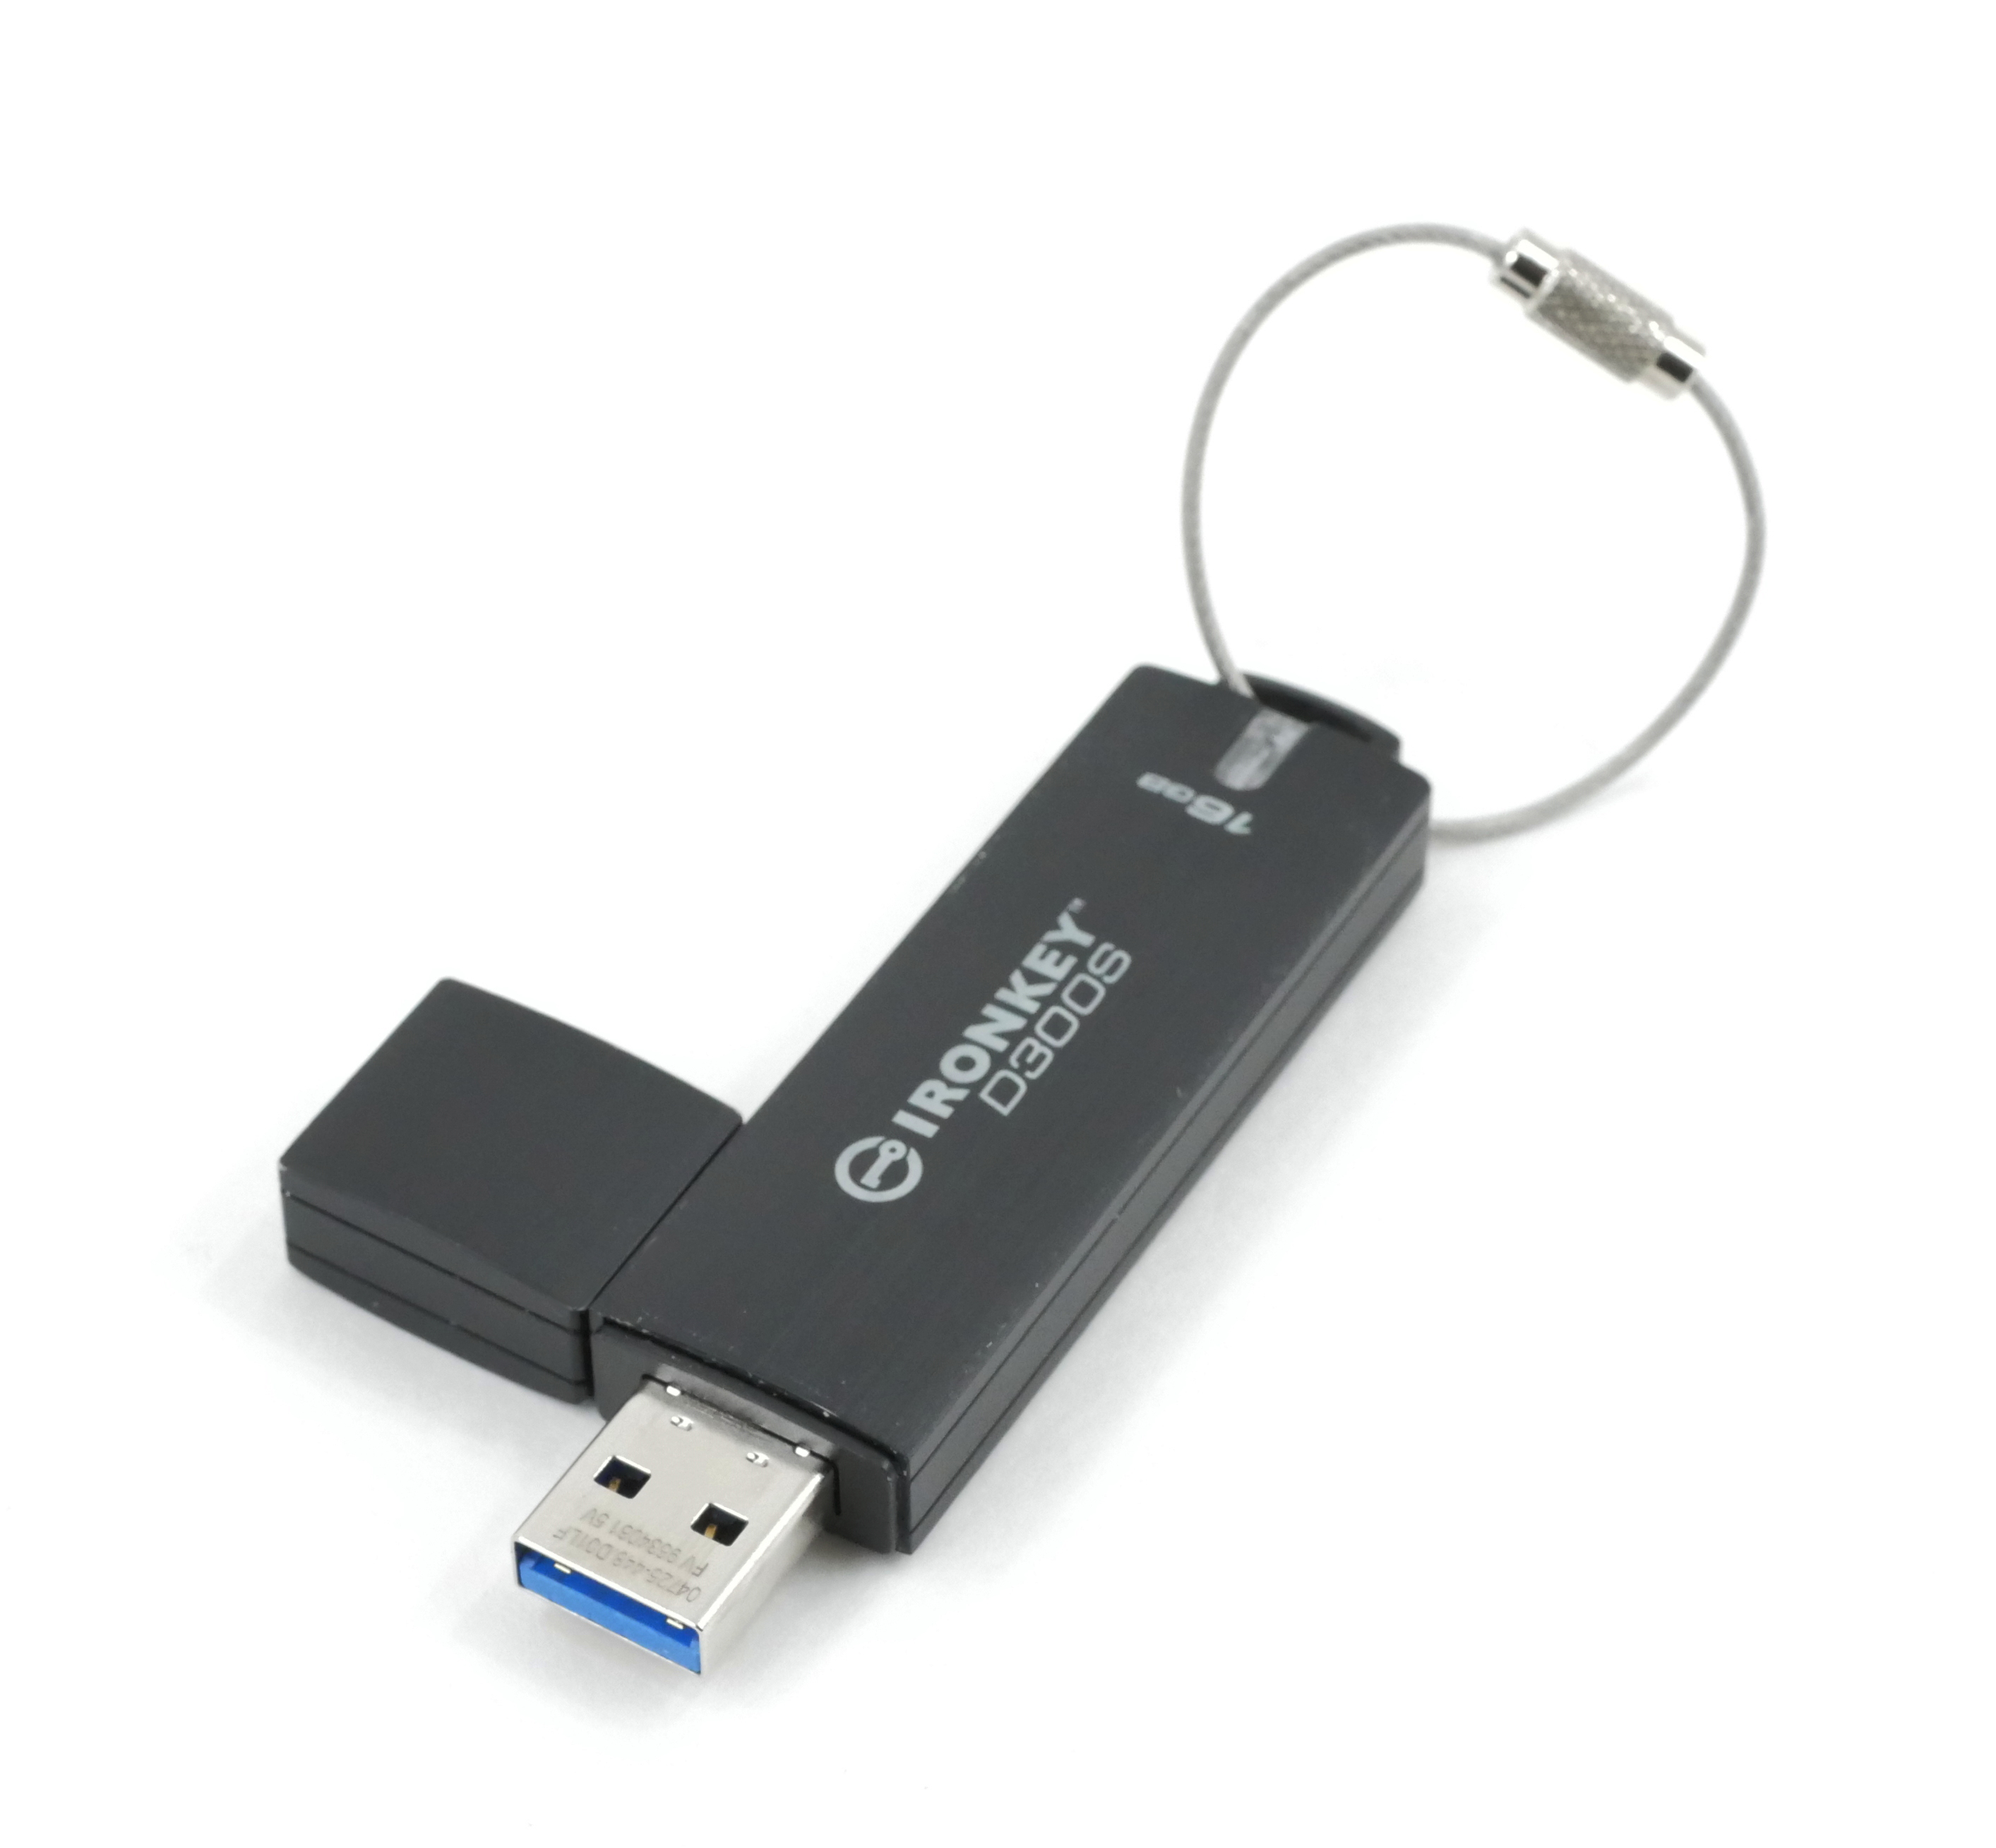 Kingston IronKey D300S USB 3.1 Gen1 Flash drive 16GB TAA Compliant IKD300S/16GB - Click Image to Close